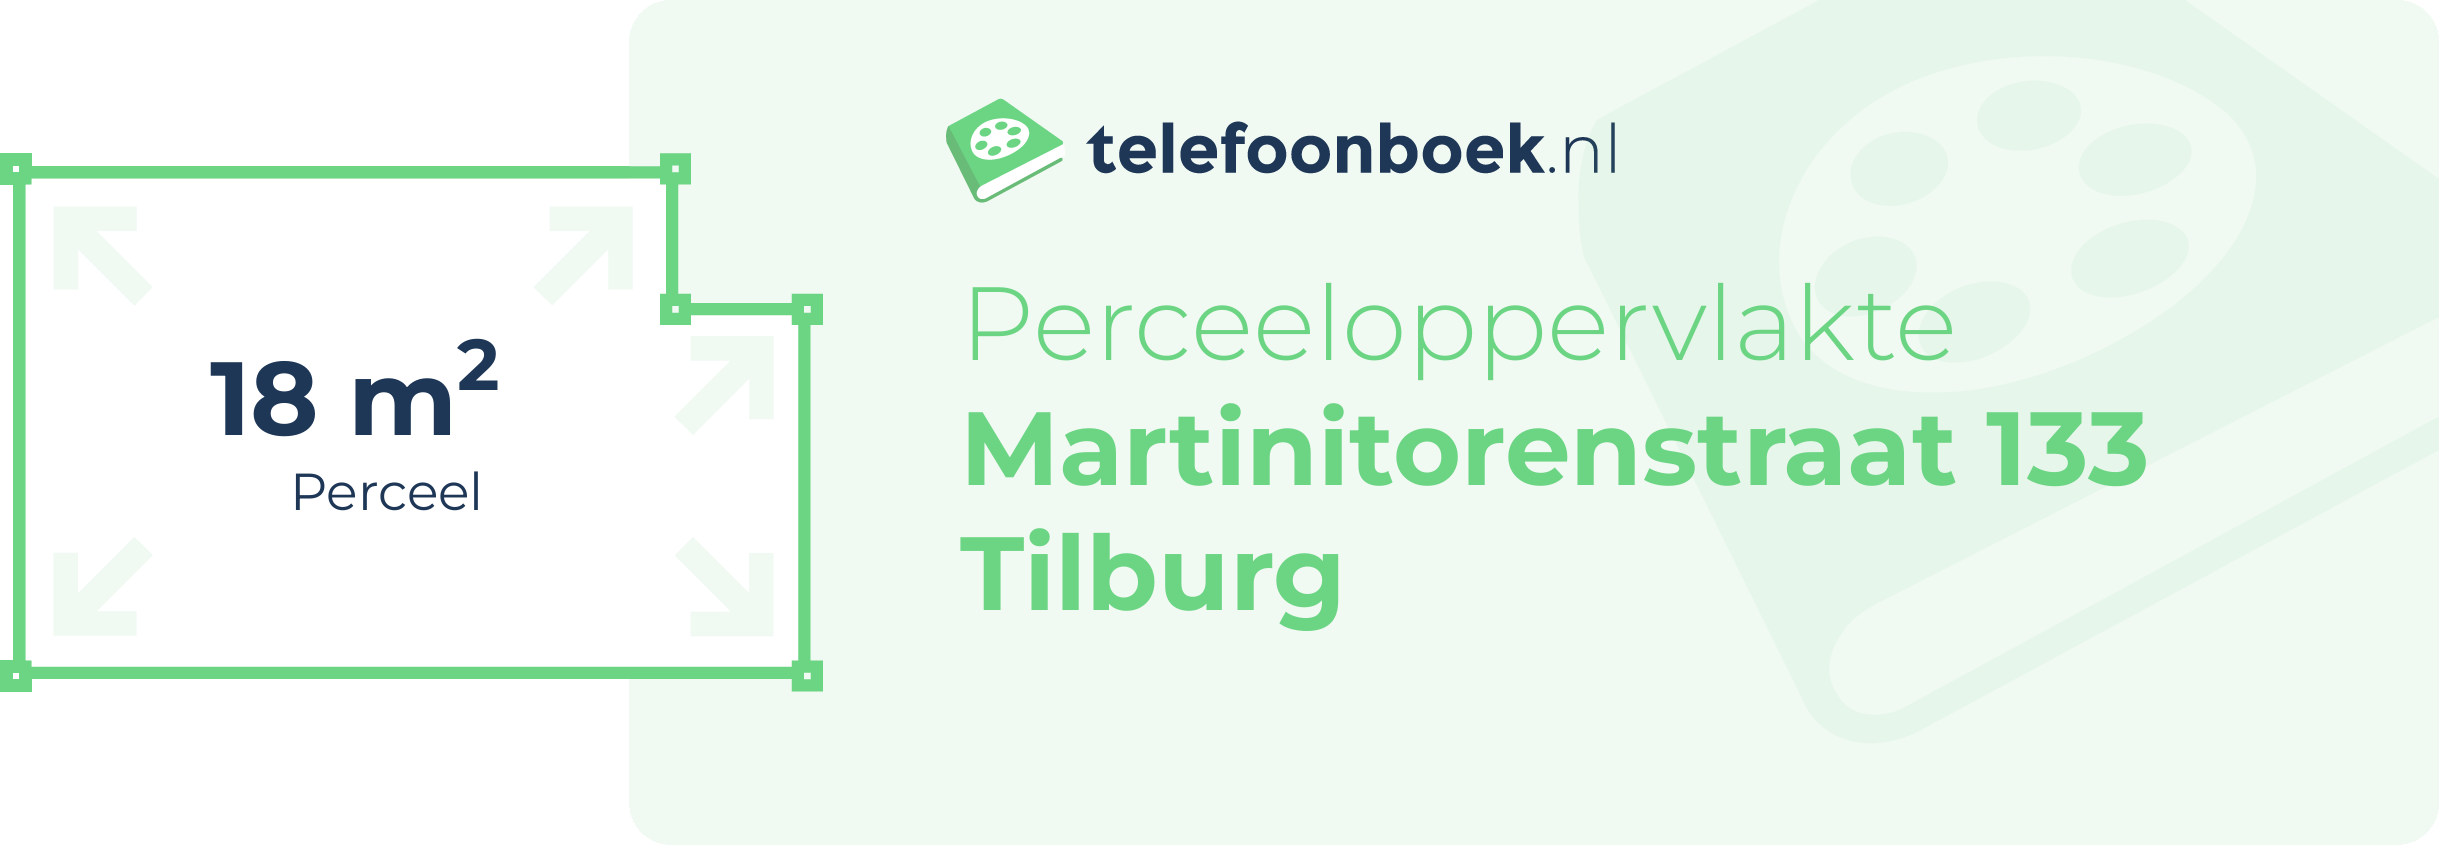 Perceeloppervlakte Martinitorenstraat 133 Tilburg